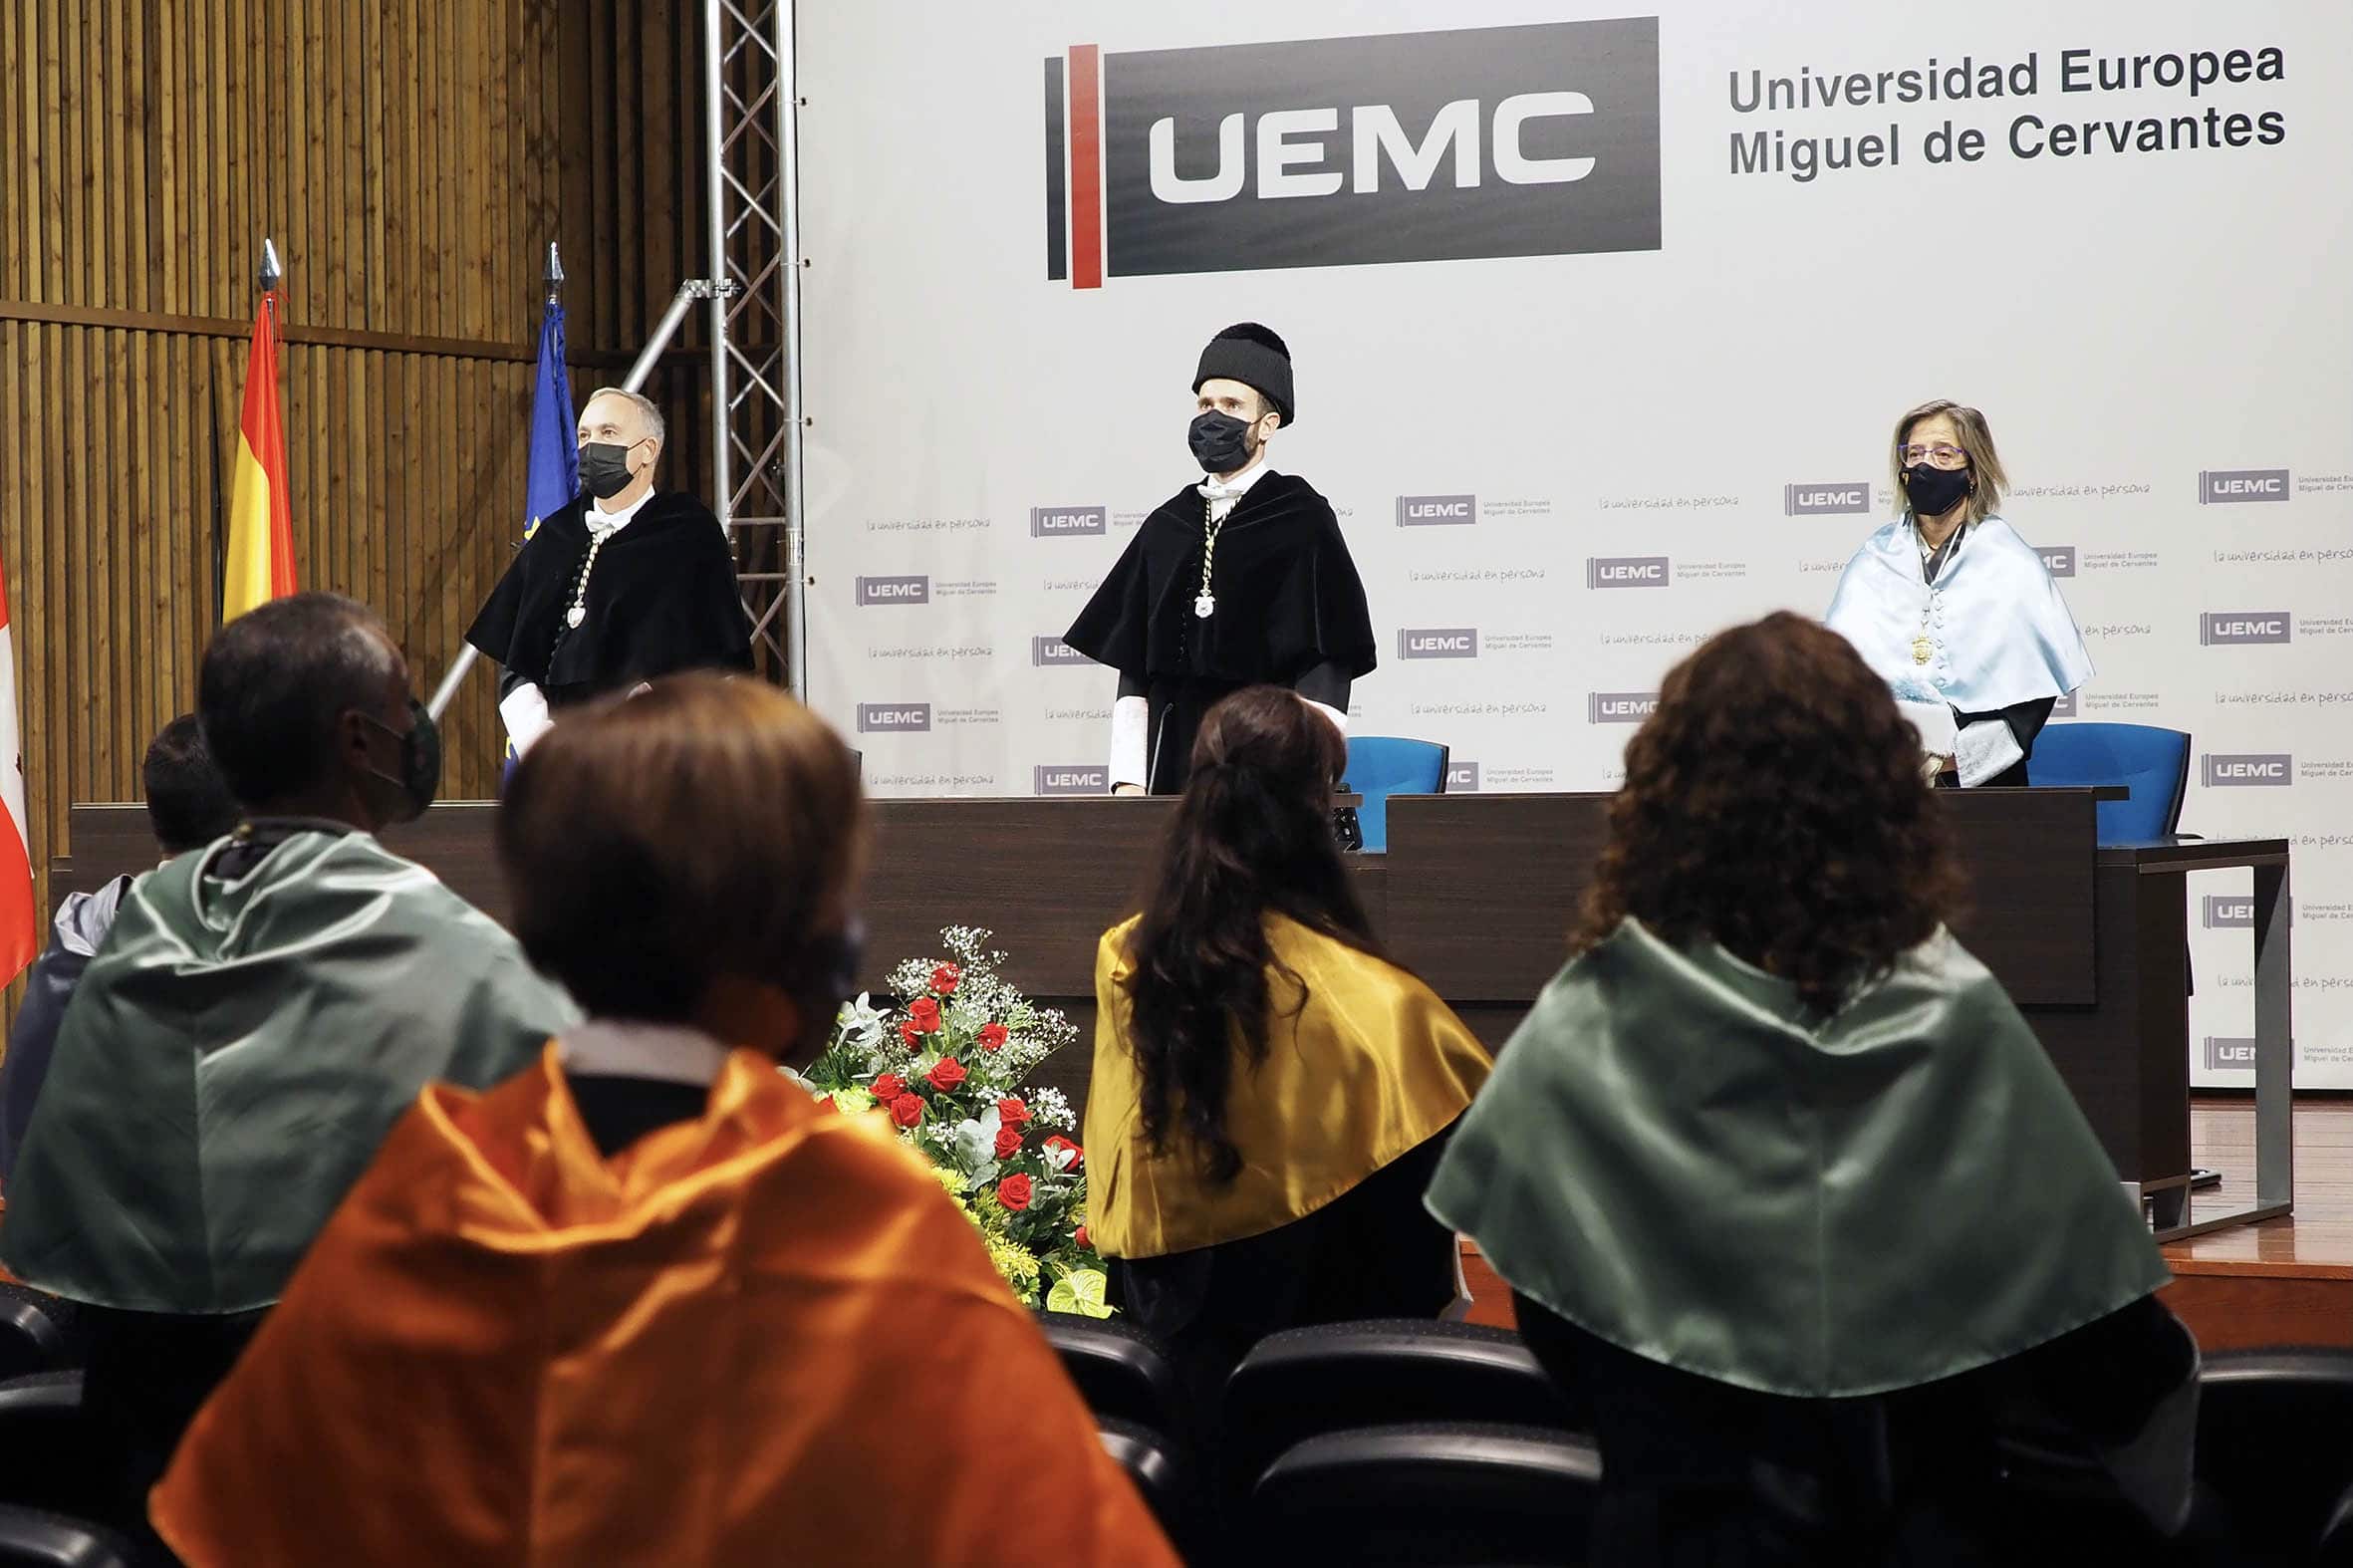 La UEMC se matricula en internacionalización y digitalización